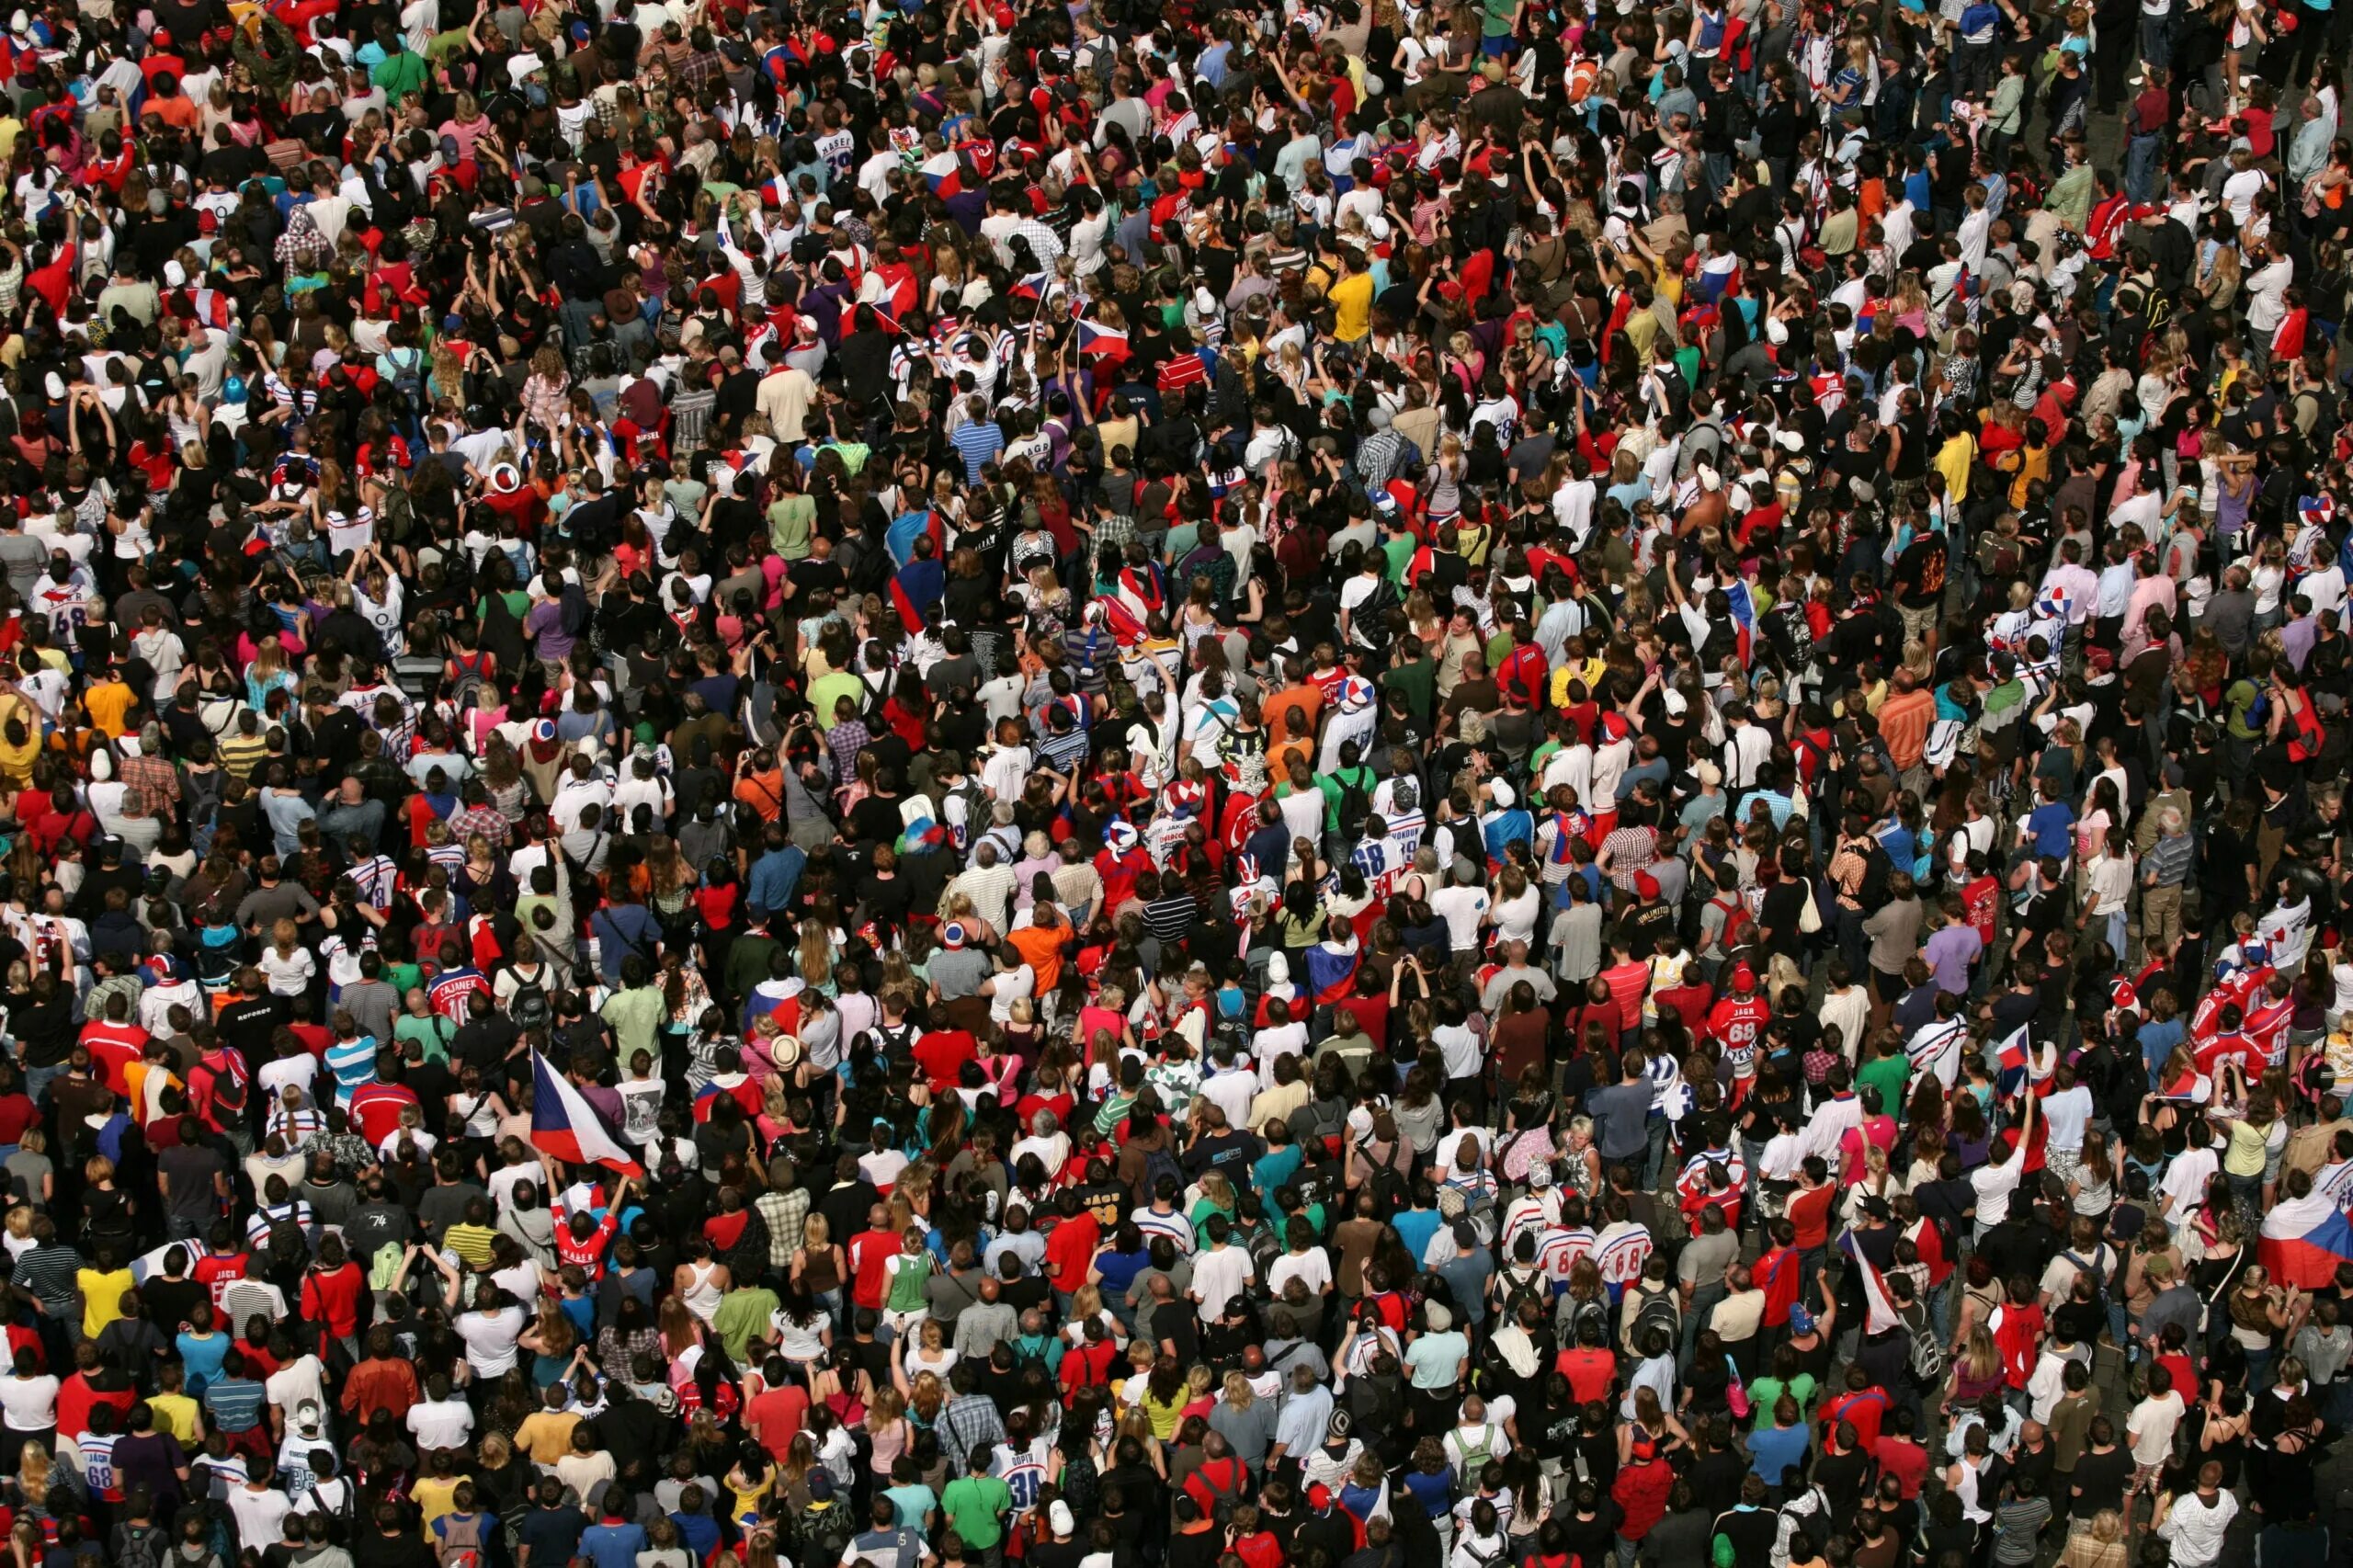 Near crowd. Человек толпы. Массовое скопление людей. Огромное скопление людей. Места большого скопления людей.